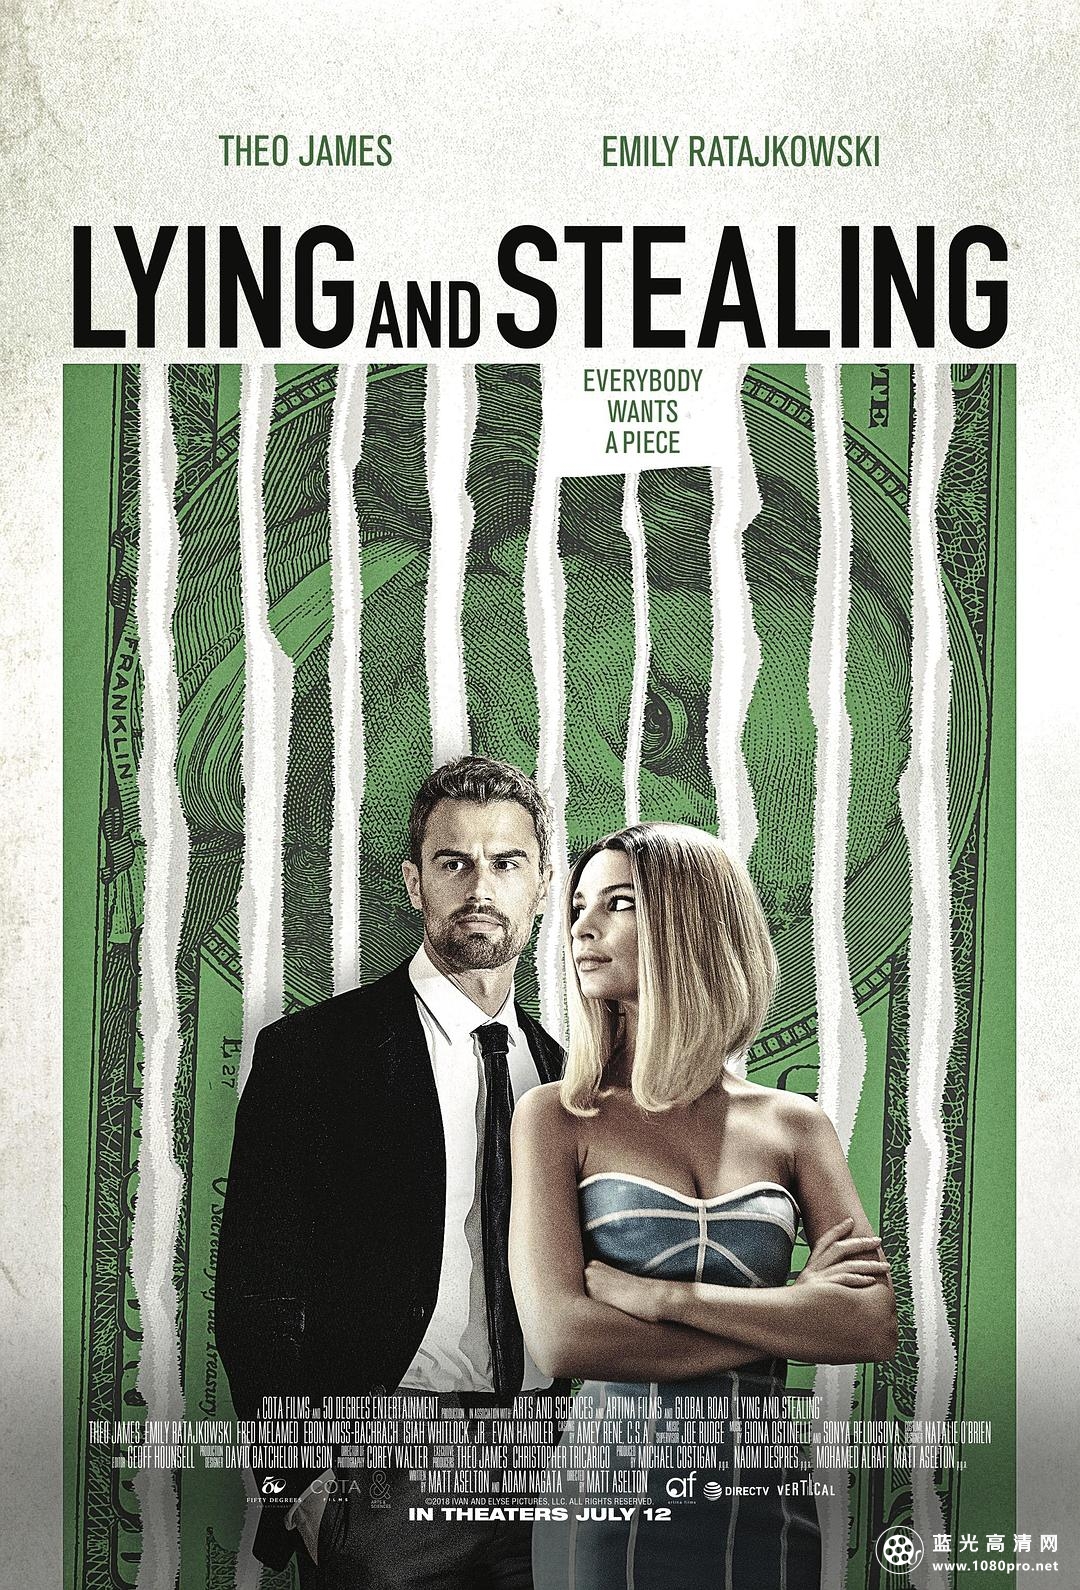 谎言与偷窃 Lying.And.Stealing.2019.1080p.BluRay.REMUX.AVC.DTS-HD.MA.TrueHD.5.1-FGT 28.07GB-1.png